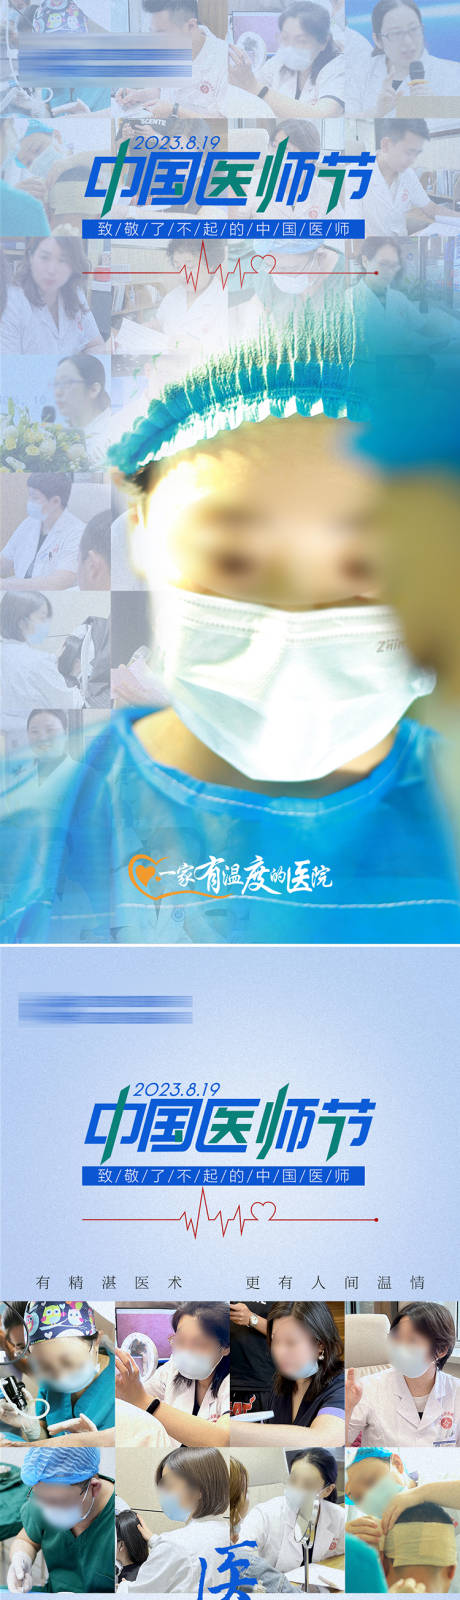 中国医师节系列海报